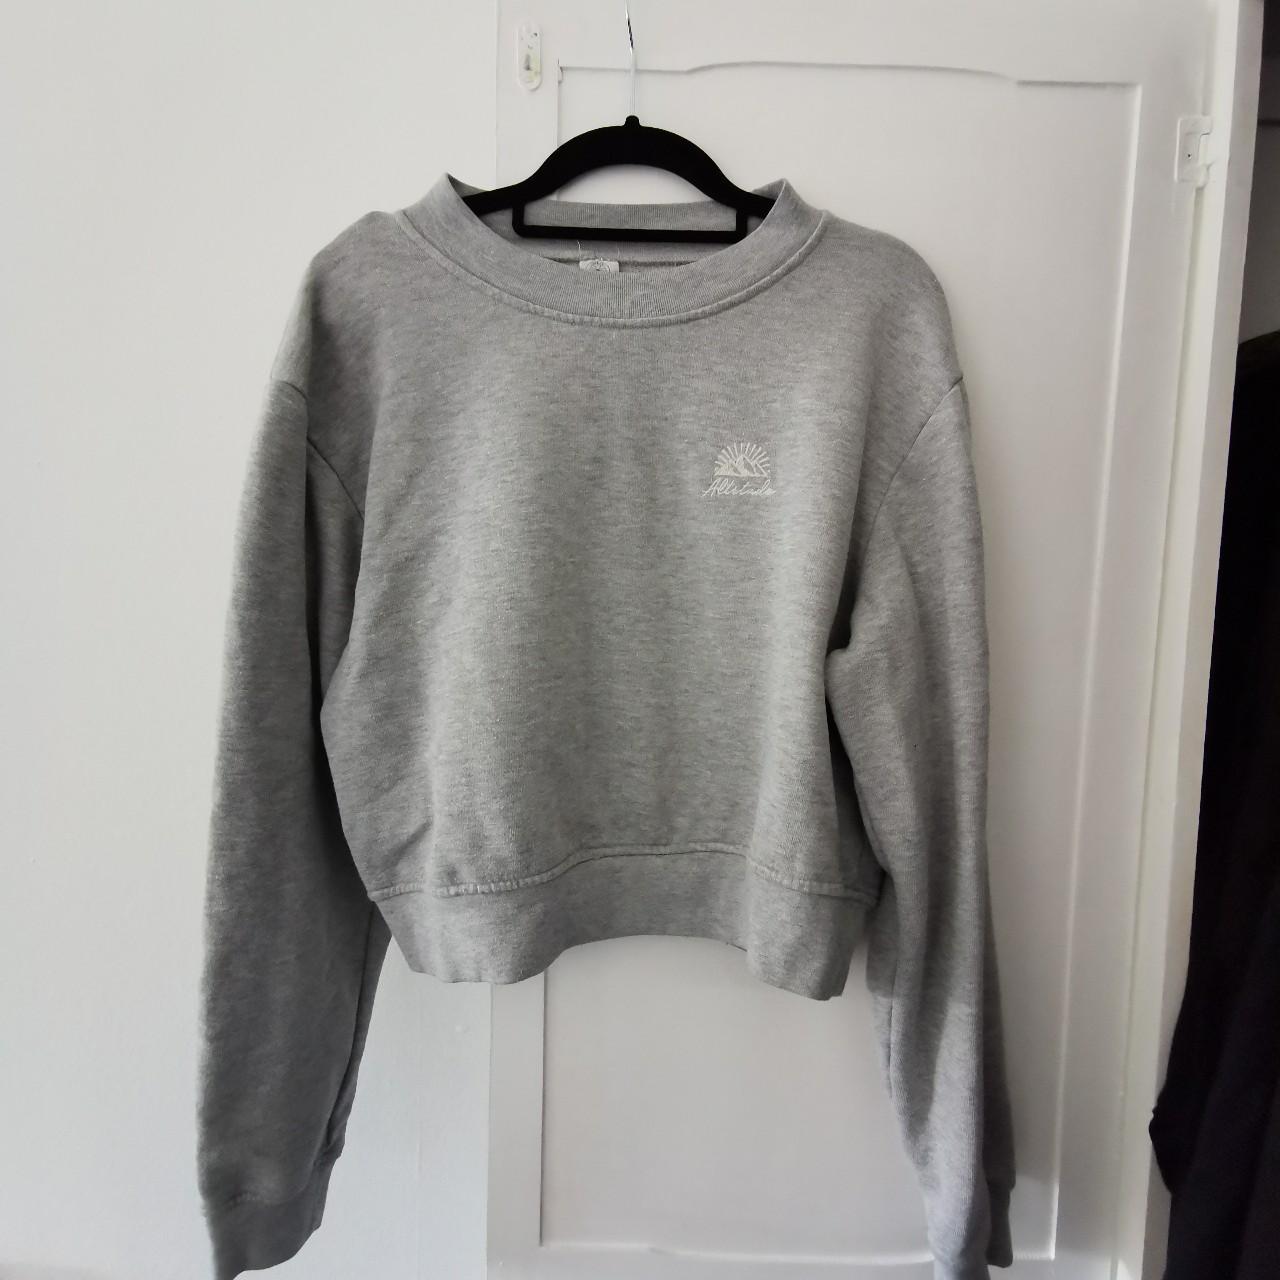 Urban Outfitters Women's Grey Sweatshirt | Depop